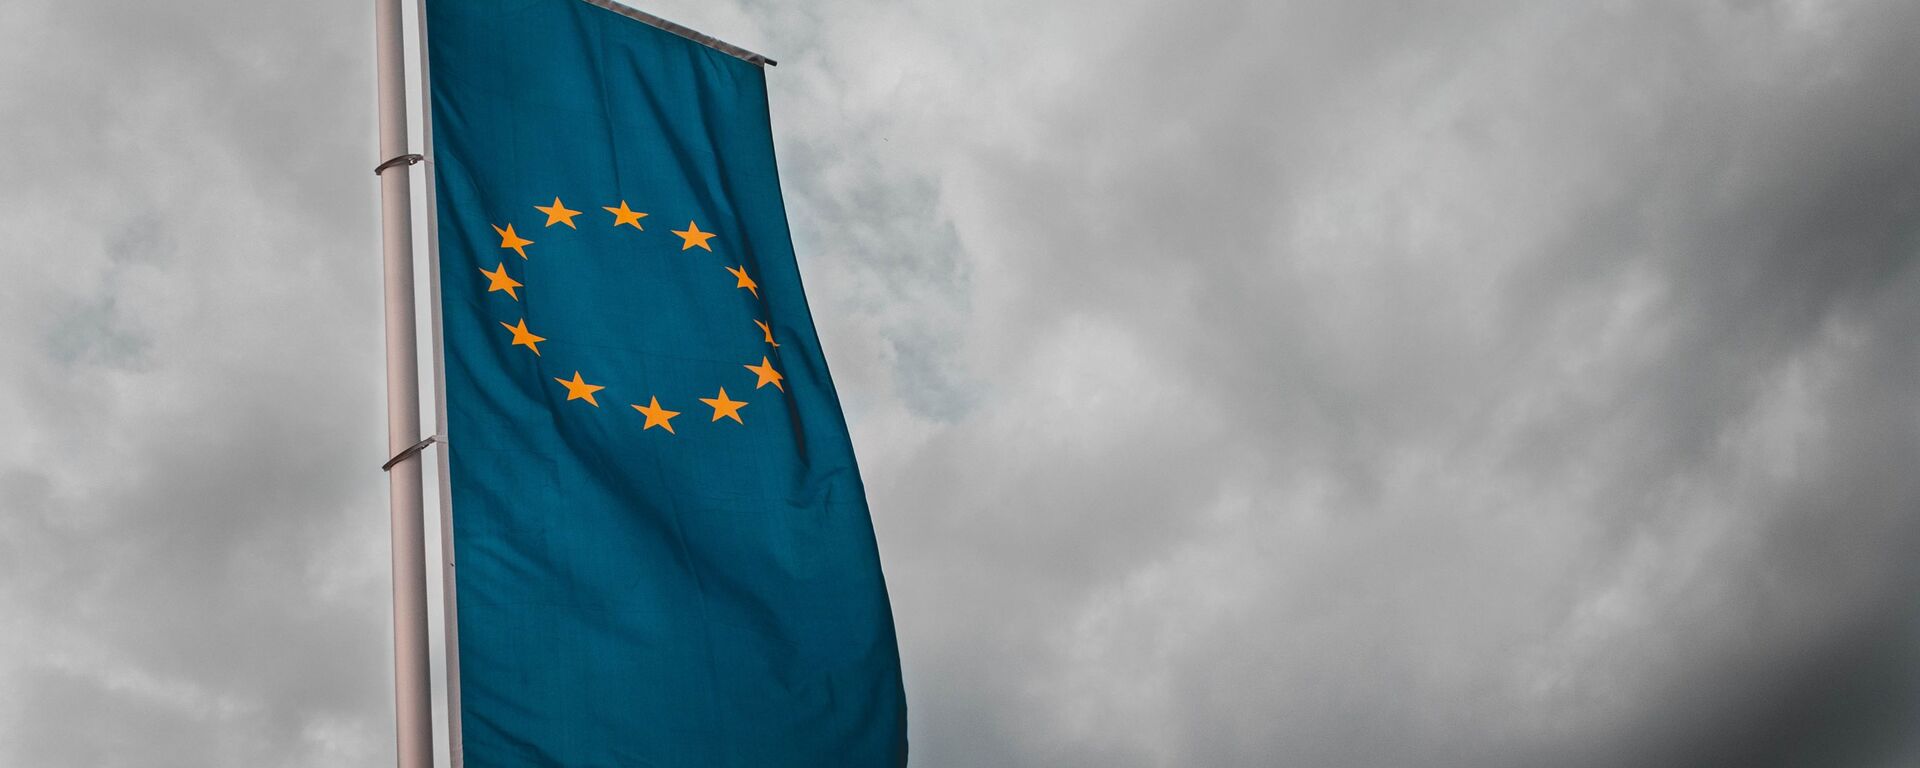 Bandera de la Unión Europea - Sputnik Mundo, 1920, 30.09.2021